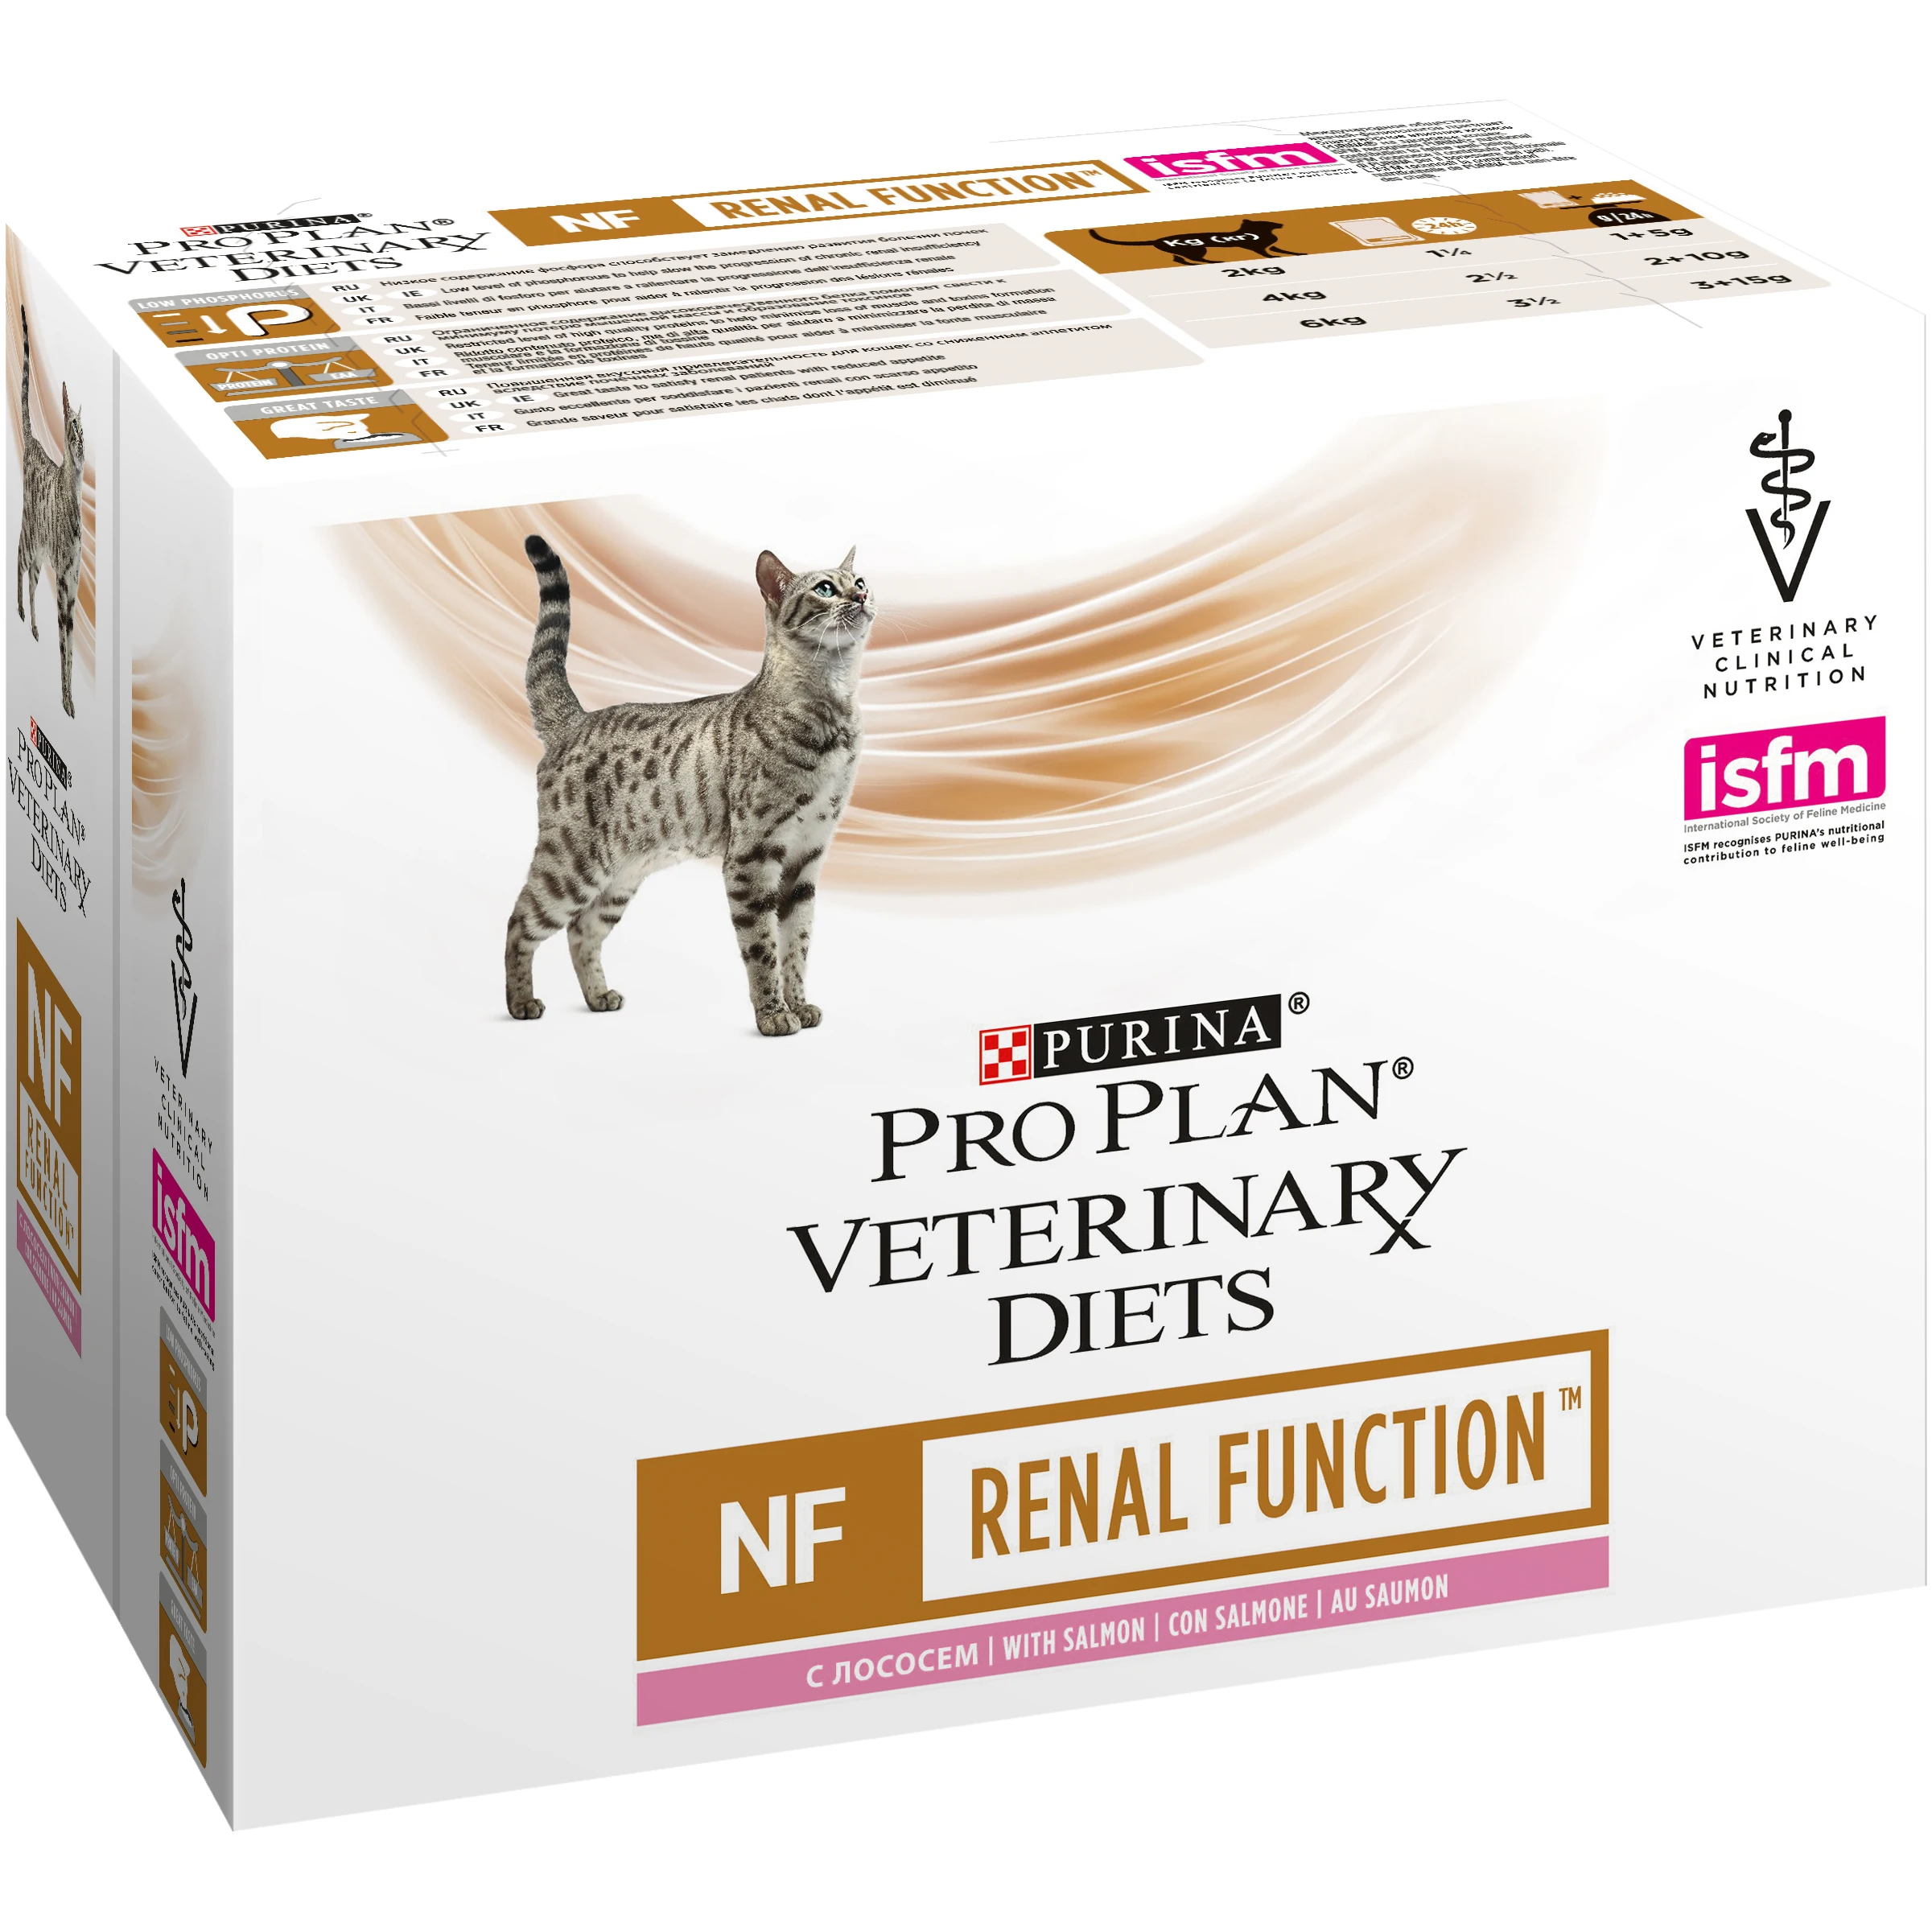 Консервы питания Pro Plan ветеринарные диеты NF кошачья пища для патологии почек, с лососом, 40 пауков, 85 г каждый